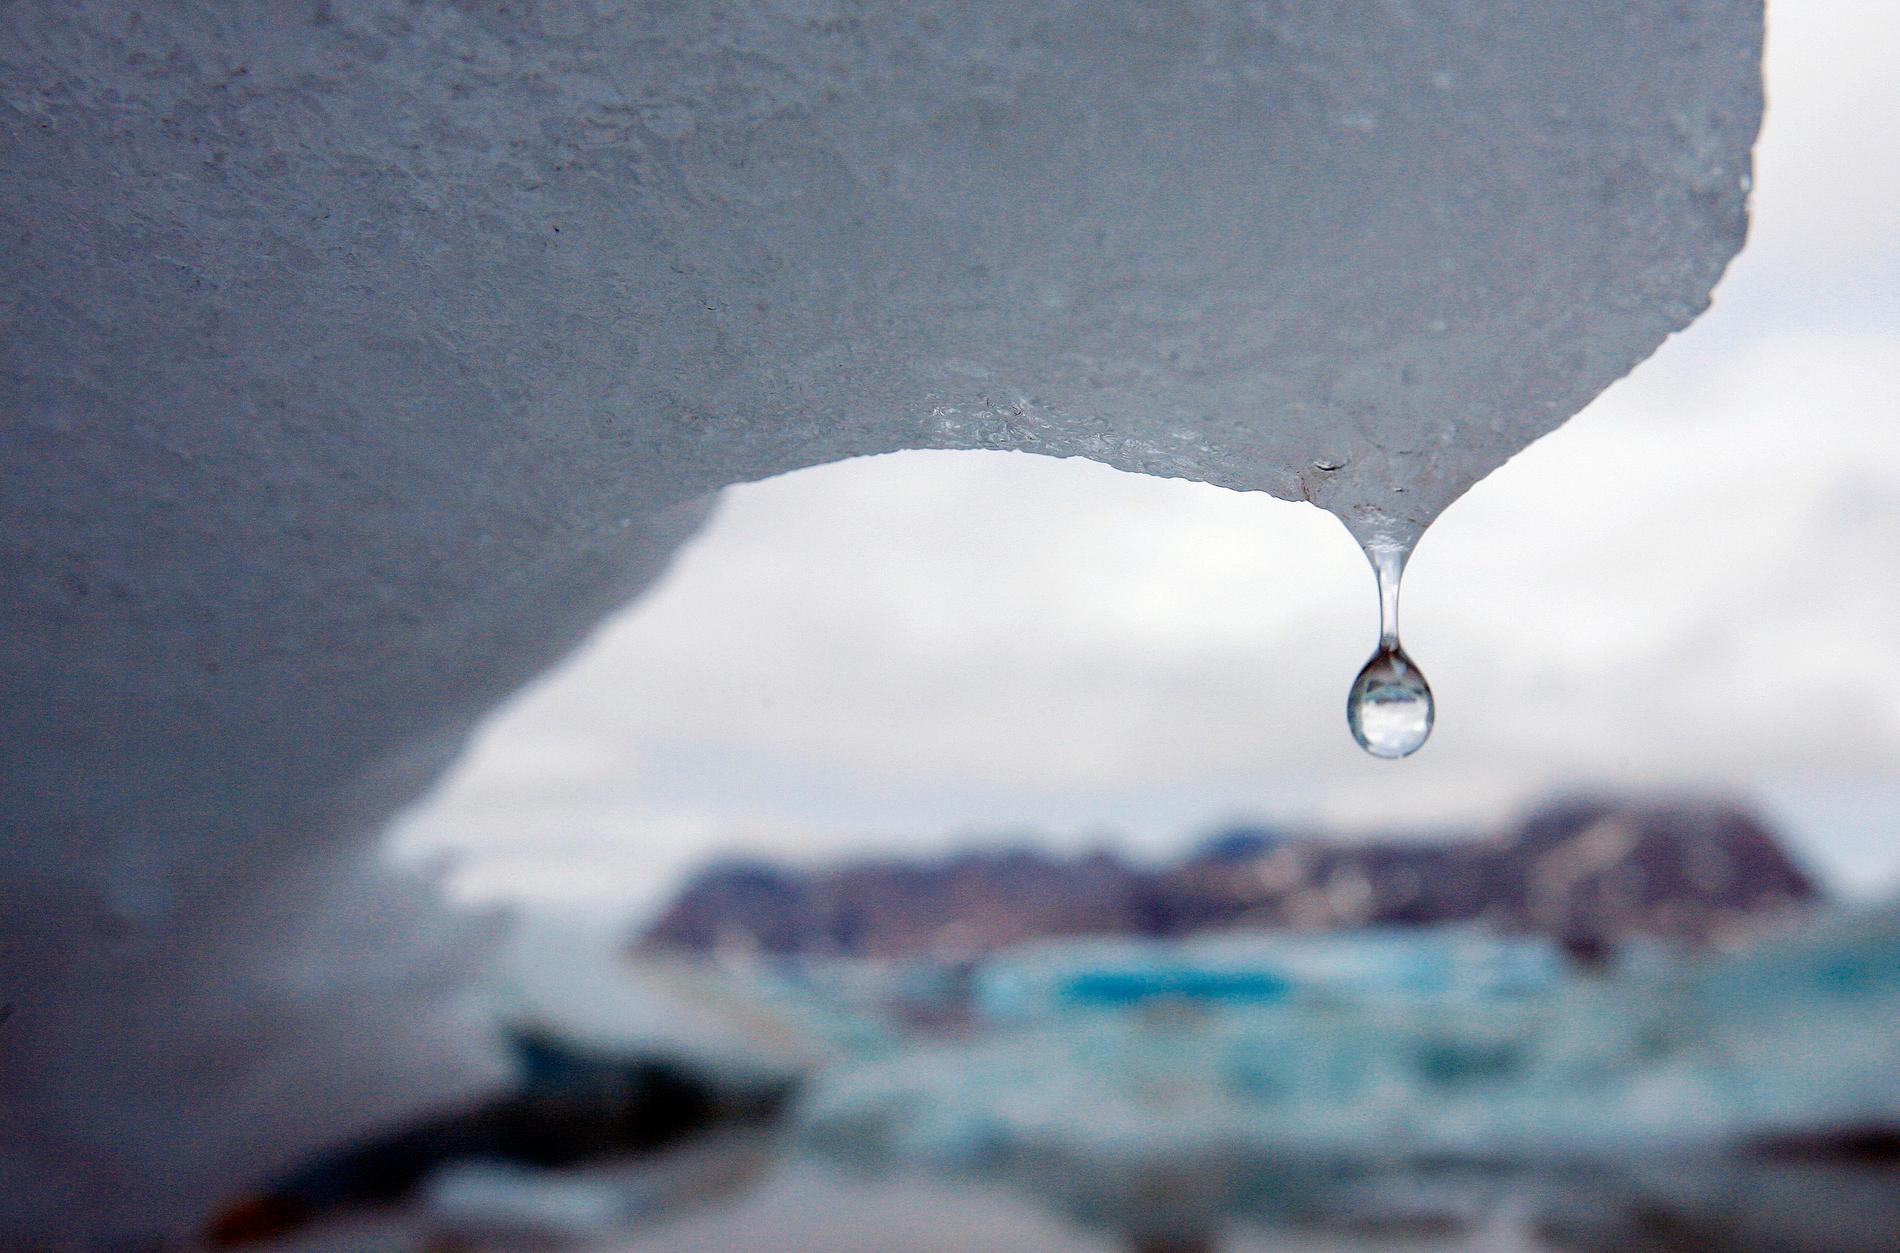 Den grönländska isen kommer att fortsätta att smälta under lång tid, även om utsläppen av växthusgaser upphör helt redan i dag. Arkivbild.